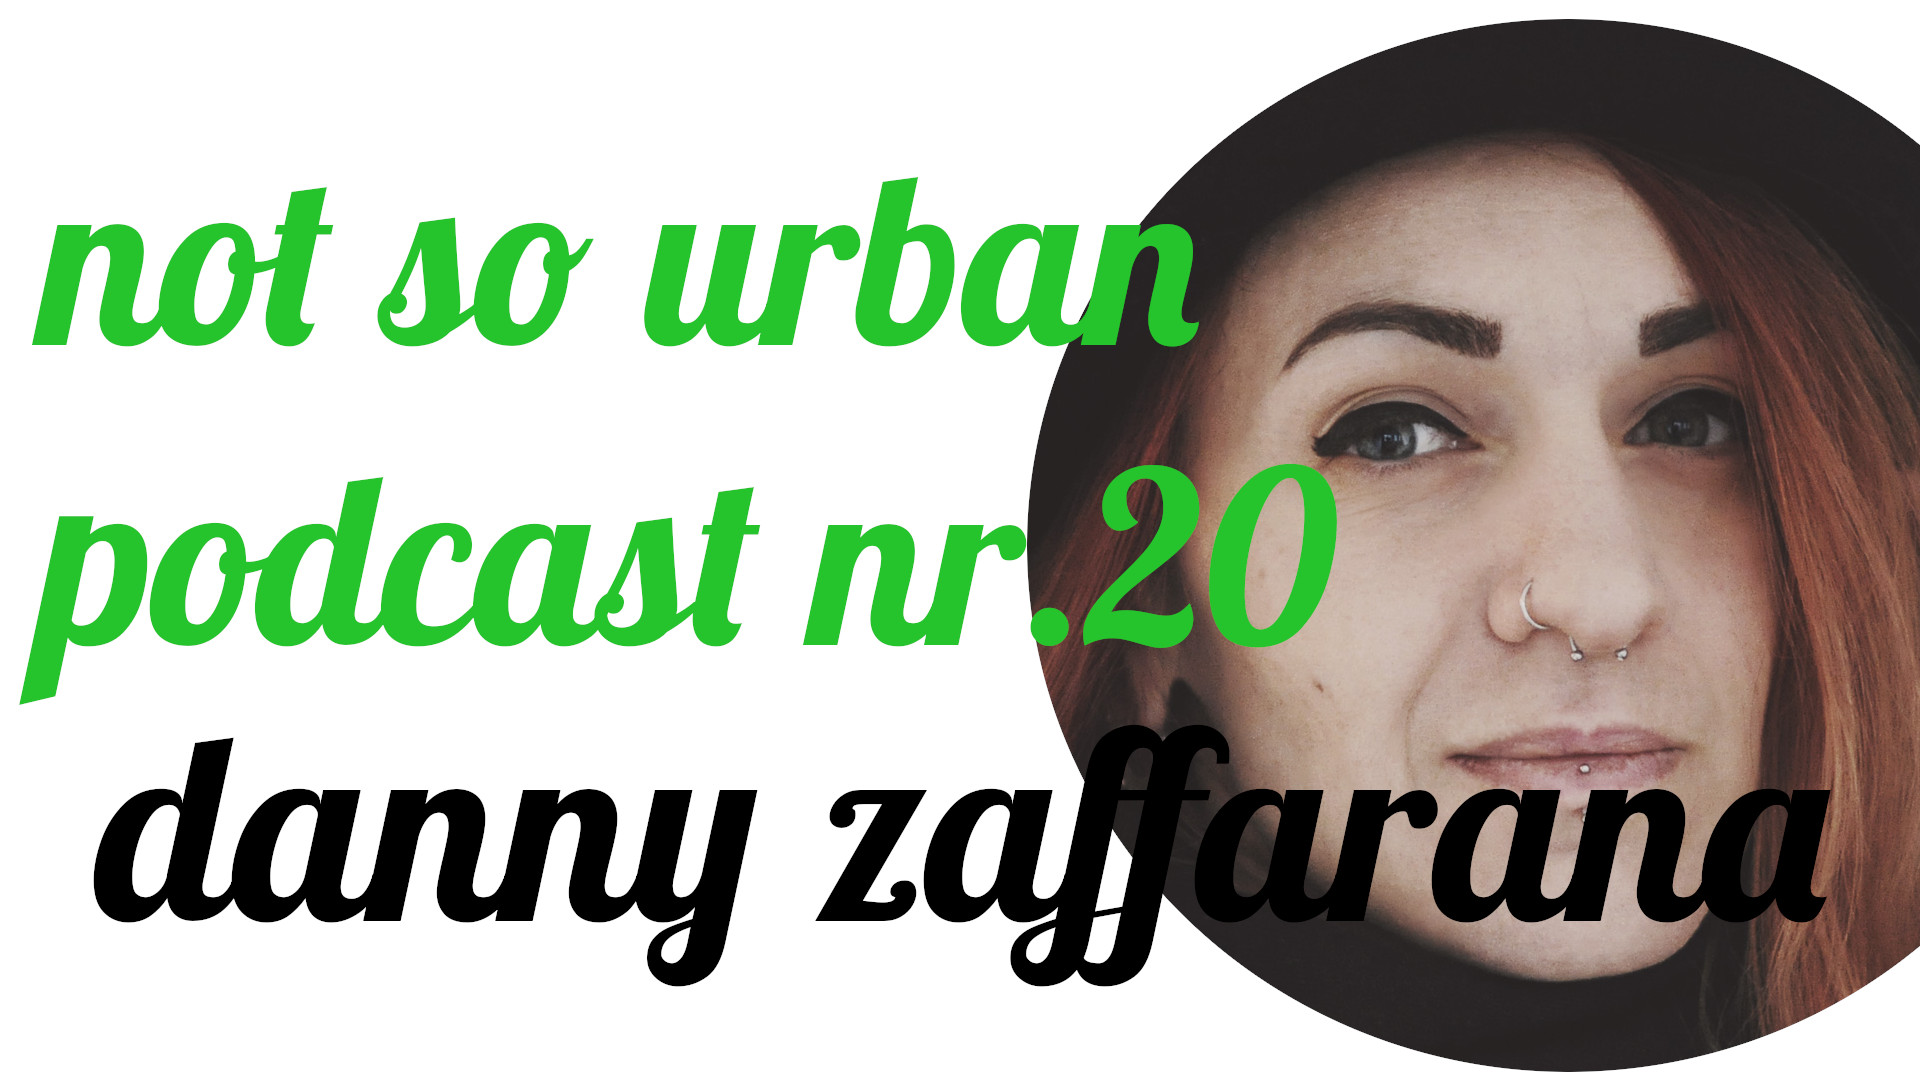 not so urban Podcast Nr. 20 Danny Zaffarana (Interviewer: Andreas Allgeyer)